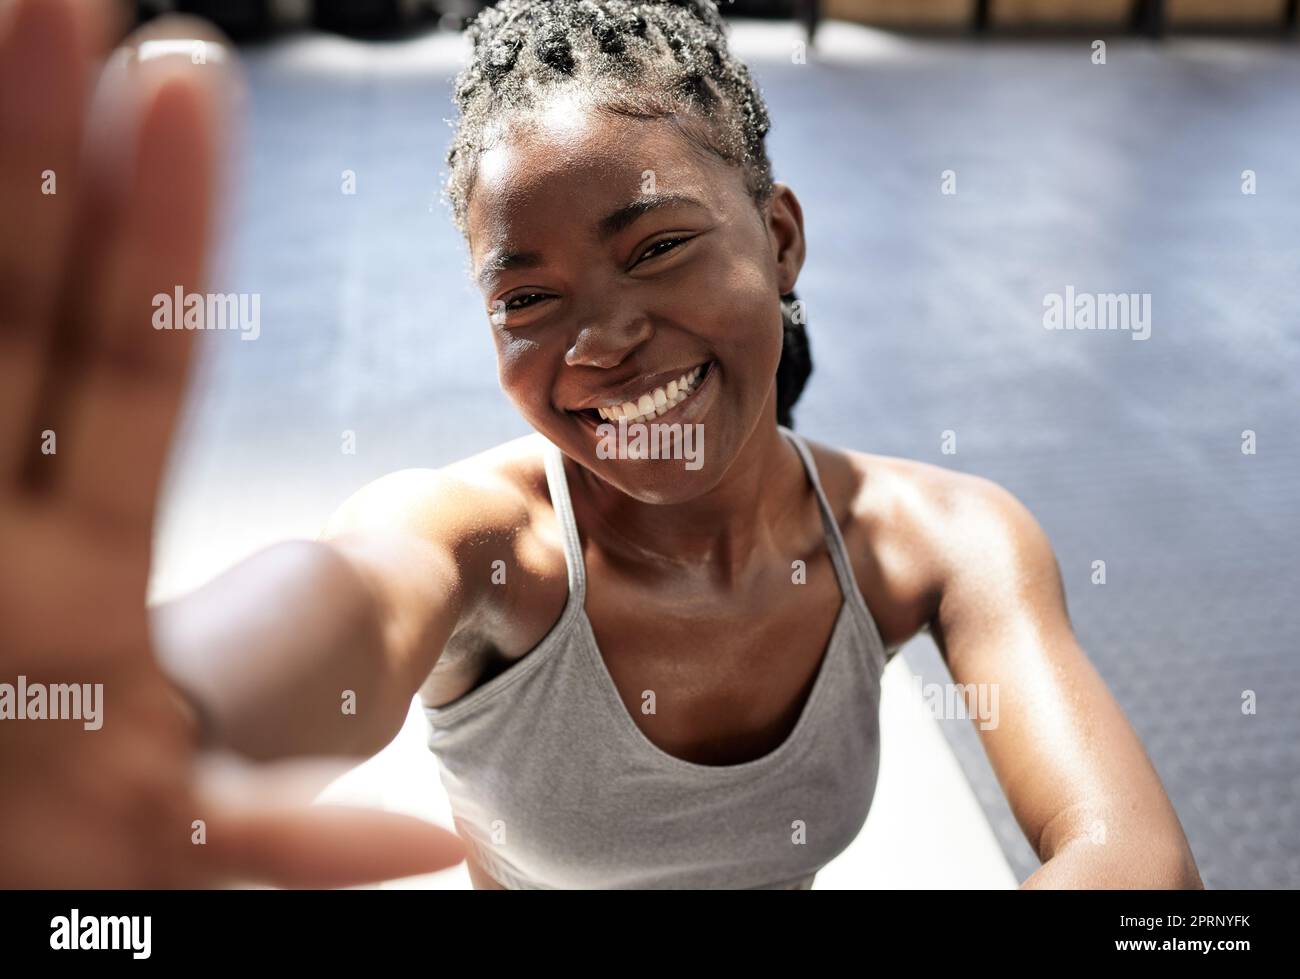 Fitness, glückliche und schwarze Frau, die ein Selfie im Fitnessstudio macht, nach Training, Training und Training allein. Lächeln, gesunde und junge afrikanische Frau Influencer, Wellness und aktiver Lebensstil in sozialen Medien Stockfoto